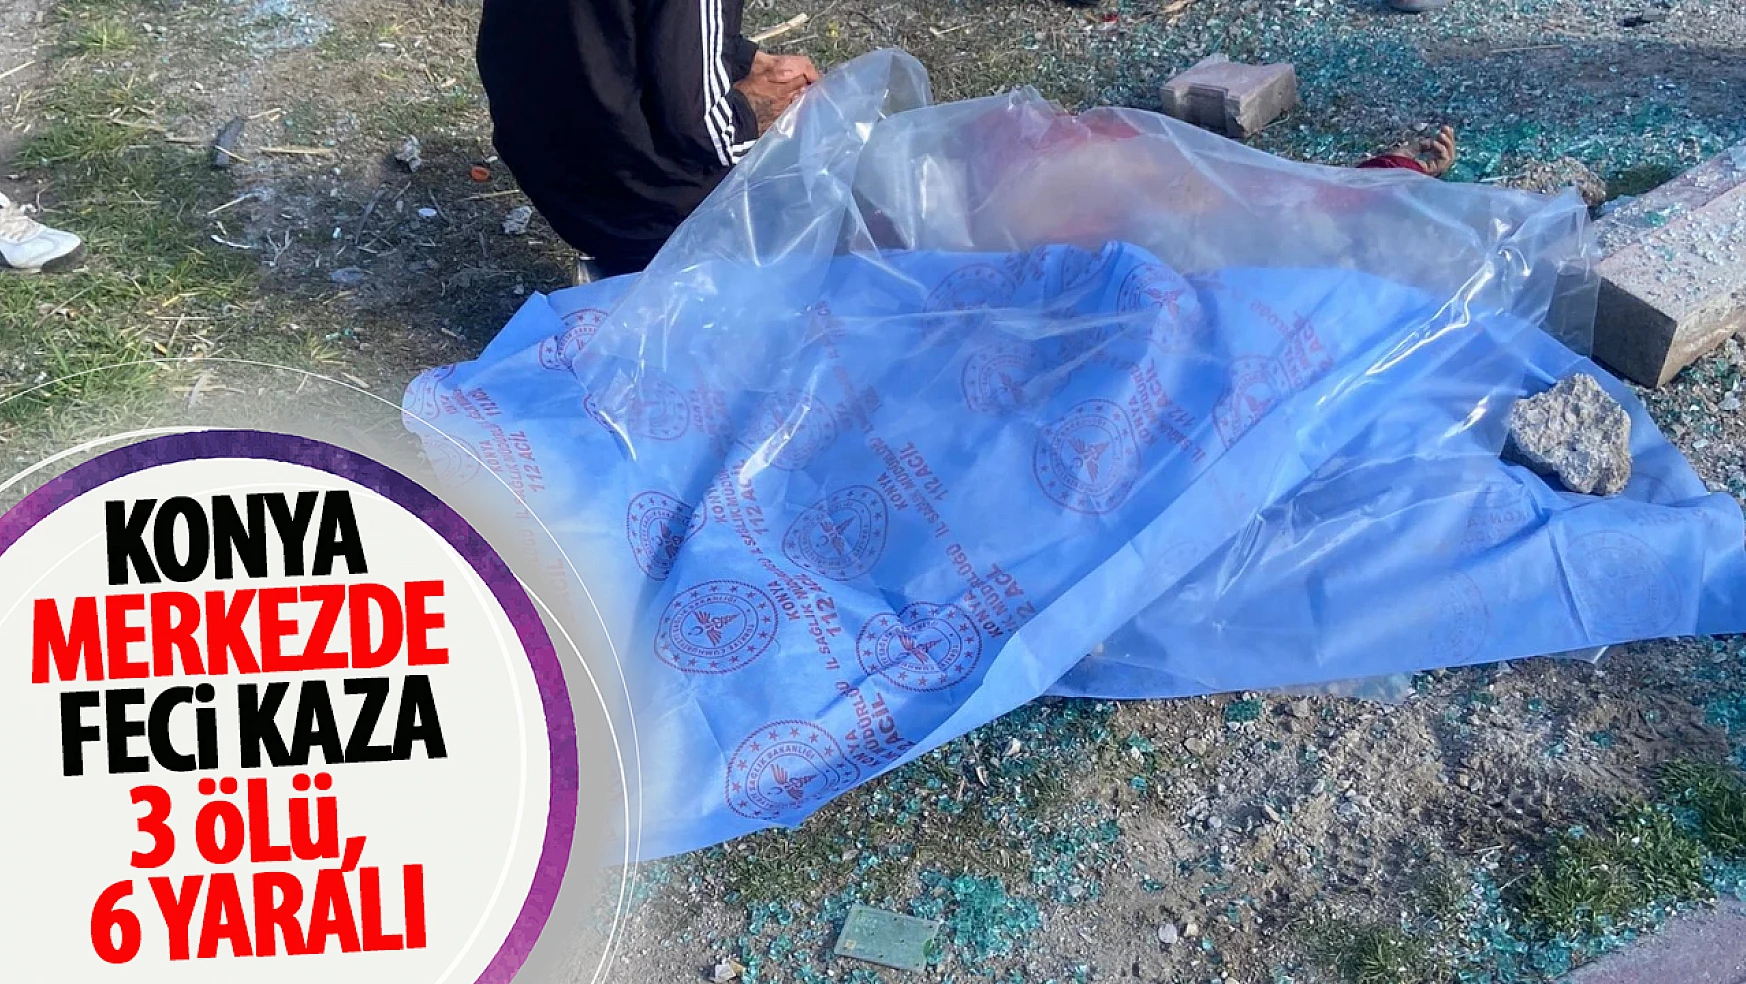 Konya'nın merkezinde feci kaza: 3 ölü 6 yaralı!